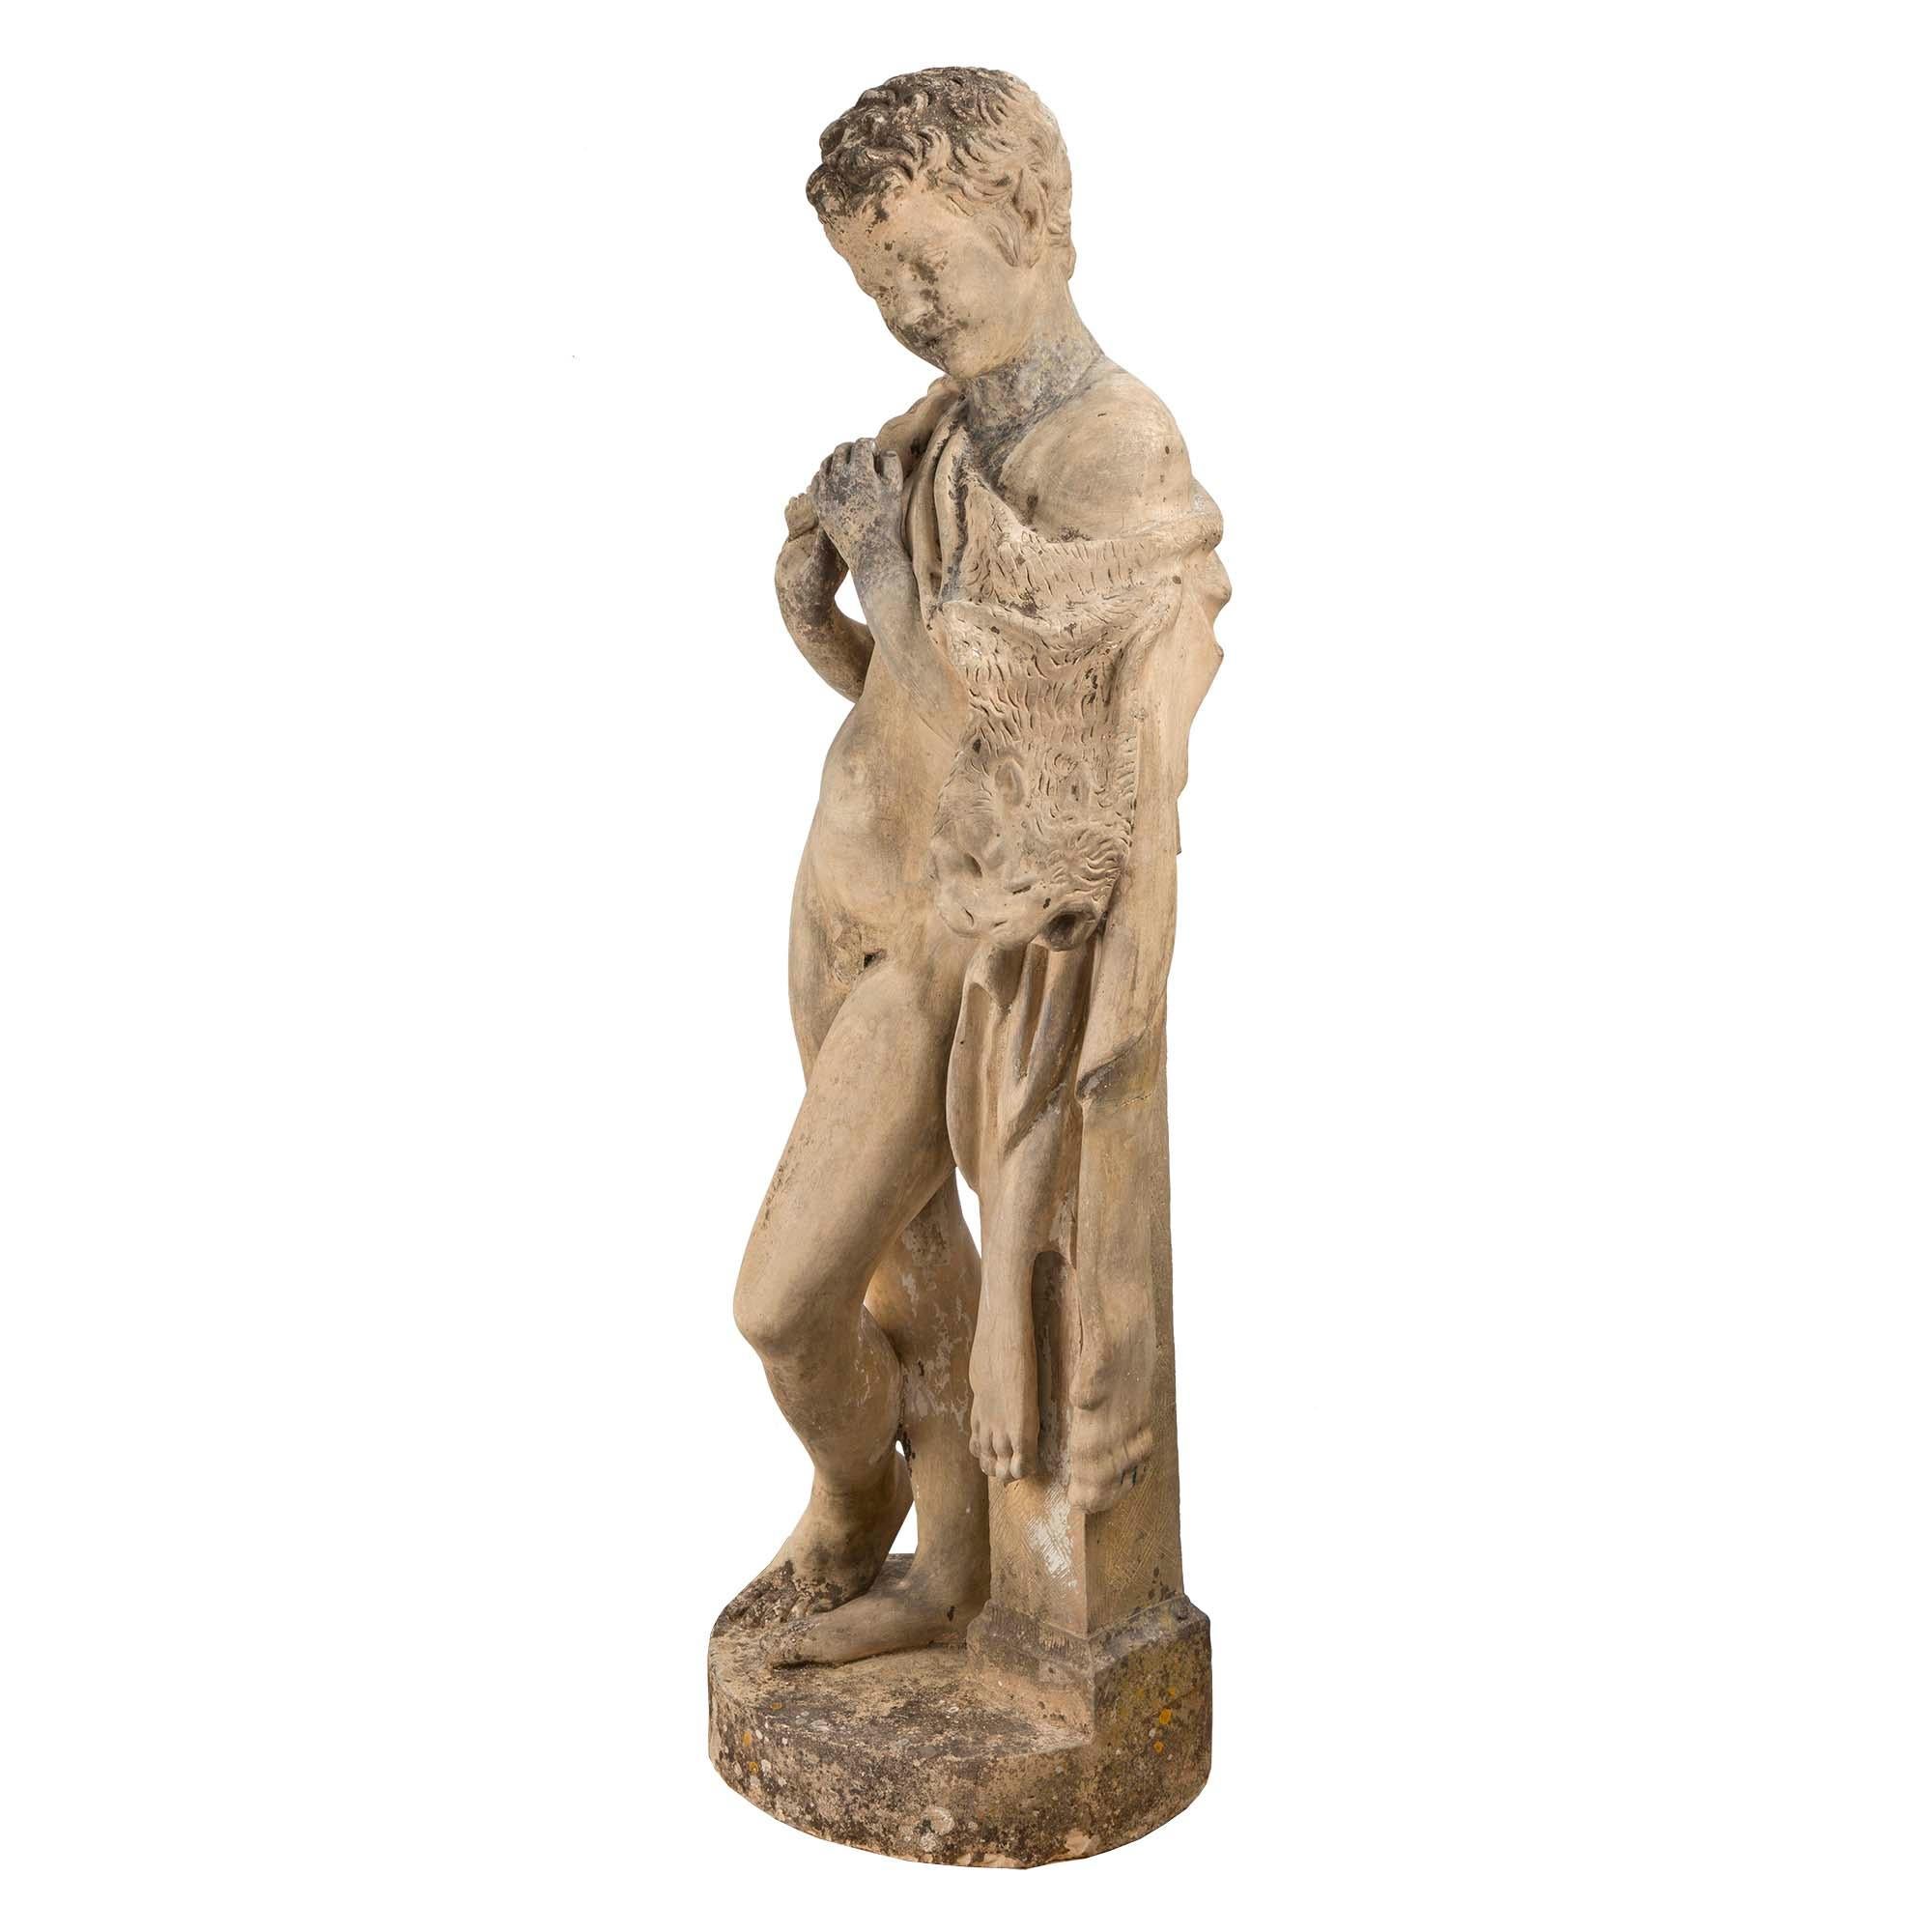 Très belle et charmante statue continentale en terre cuite du XIXe siècle représentant un jeune chasseur. Le jeune garçon est debout sur une base circulaire, appuyé sur une colonne. Il est drapé dans son butin de chasse et tient une flûte. Des